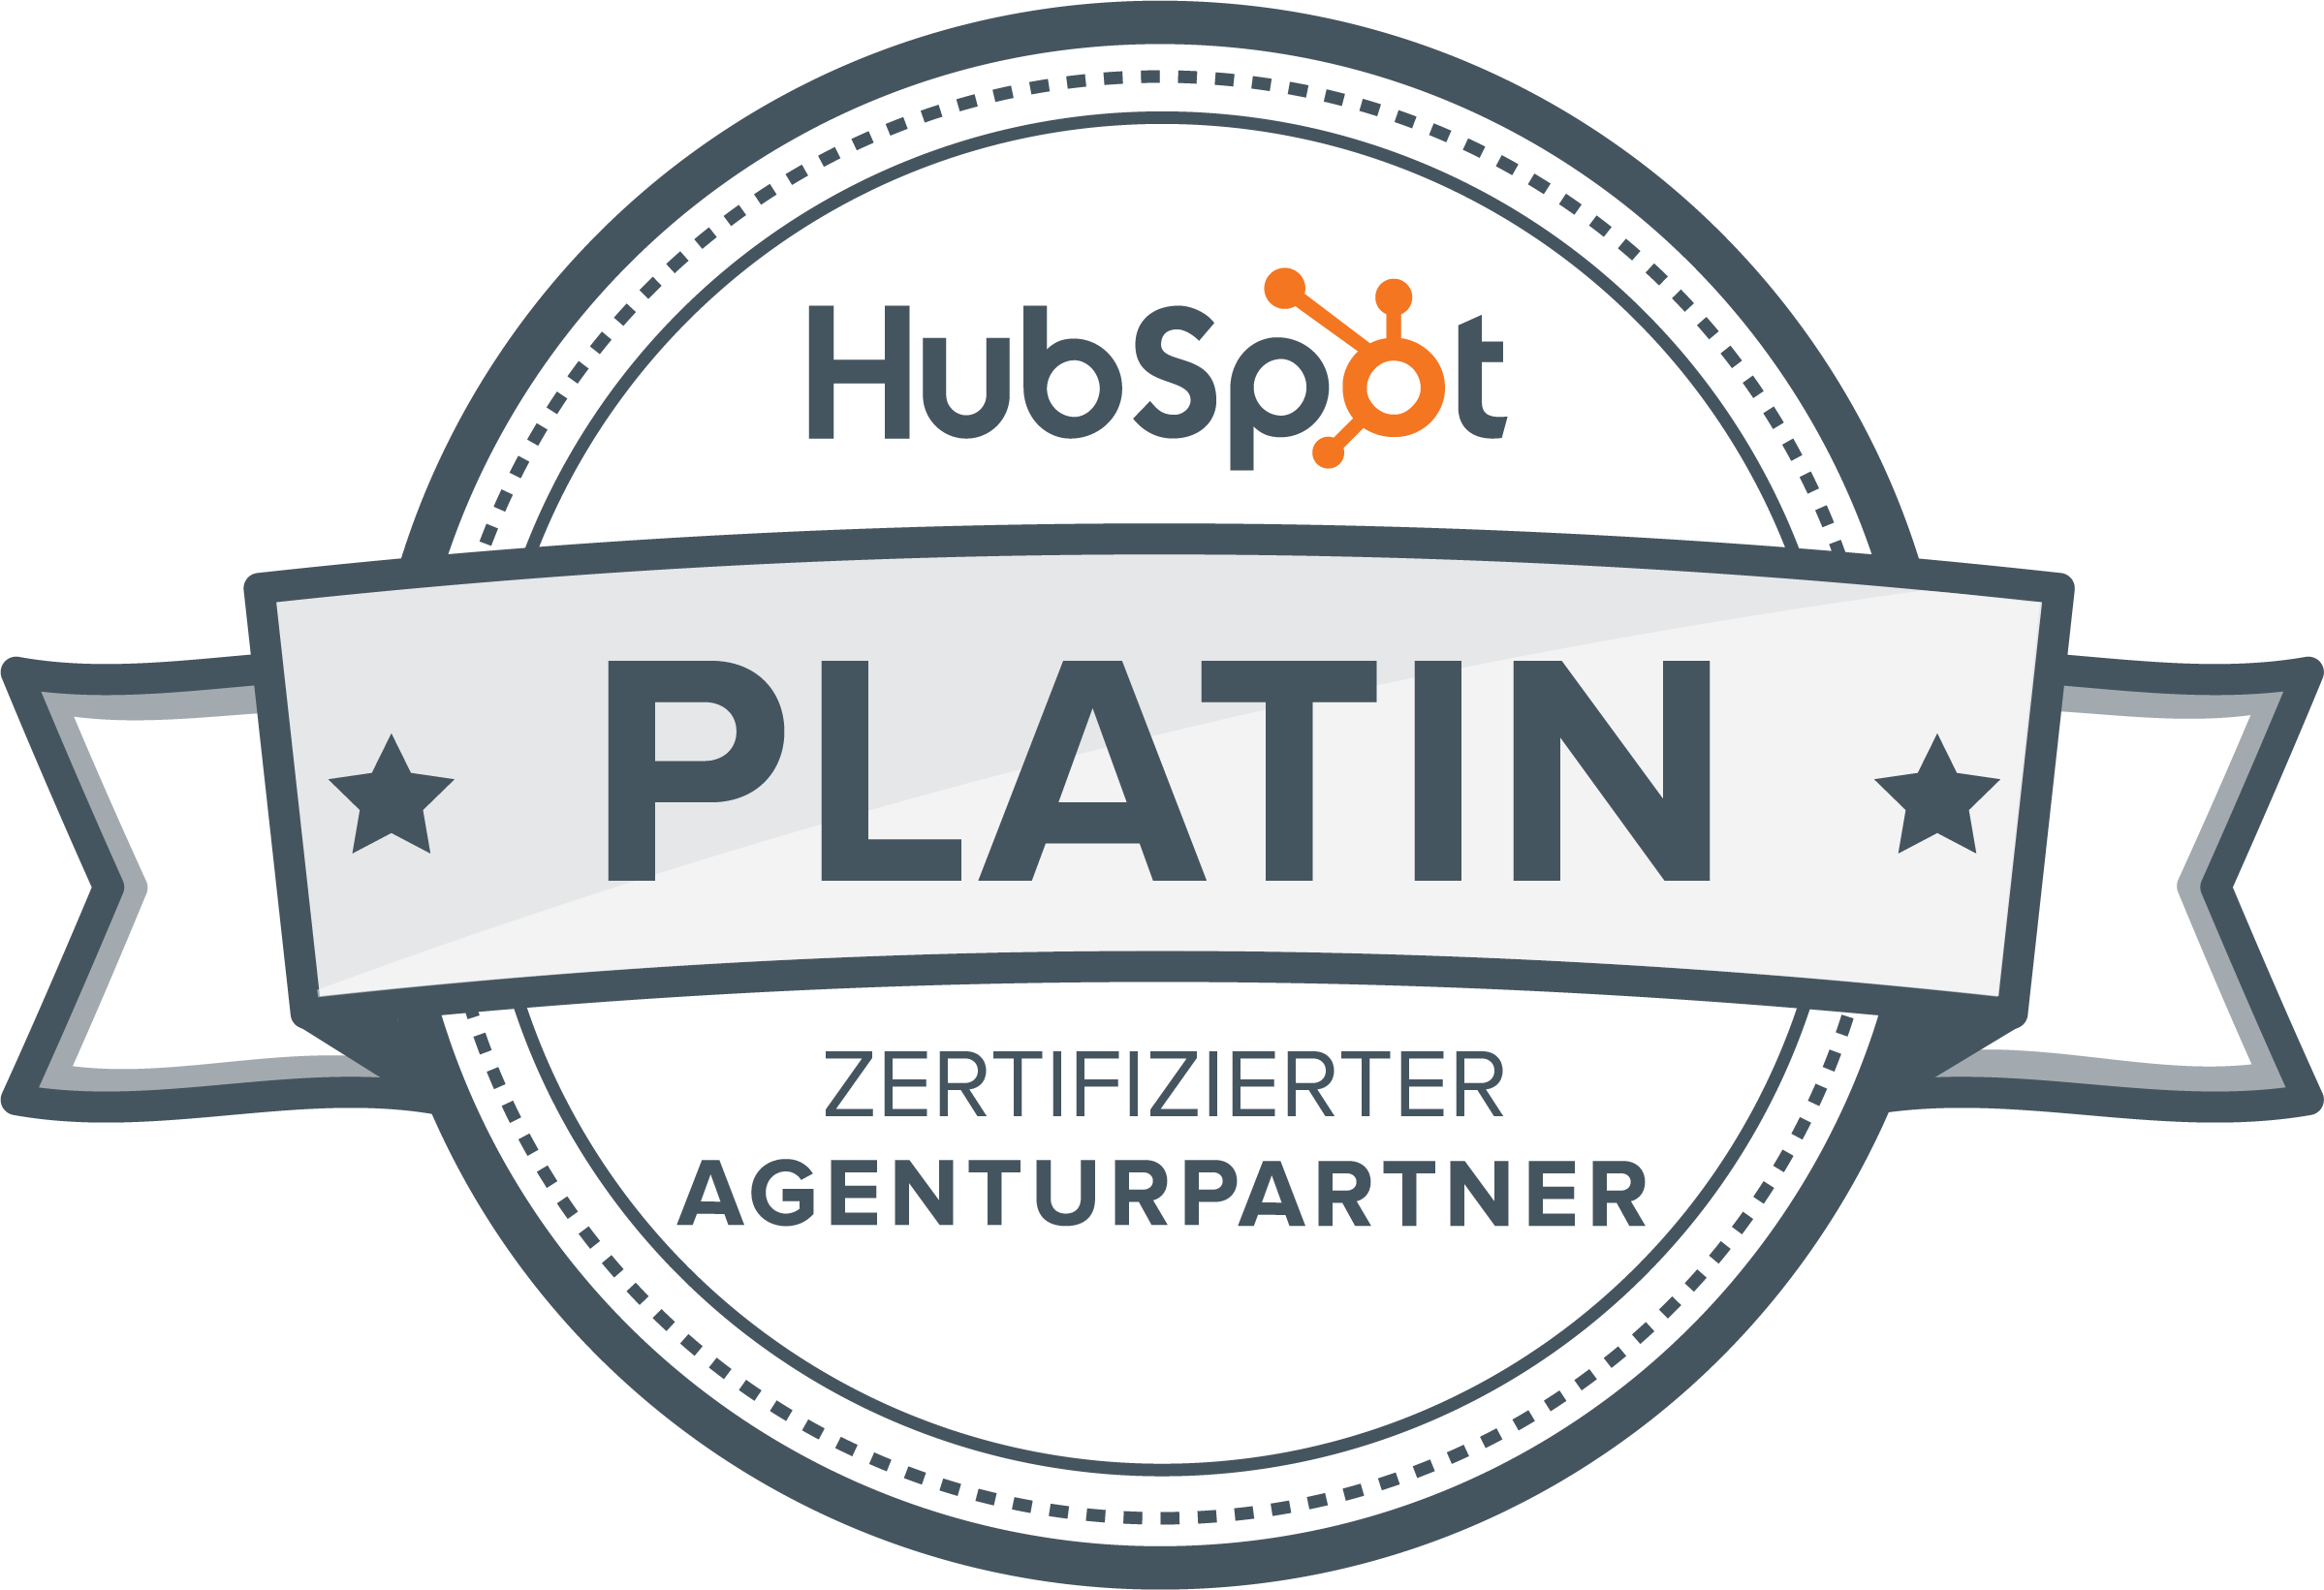 HubSpot Platin Zertifizierter Agenturpartner